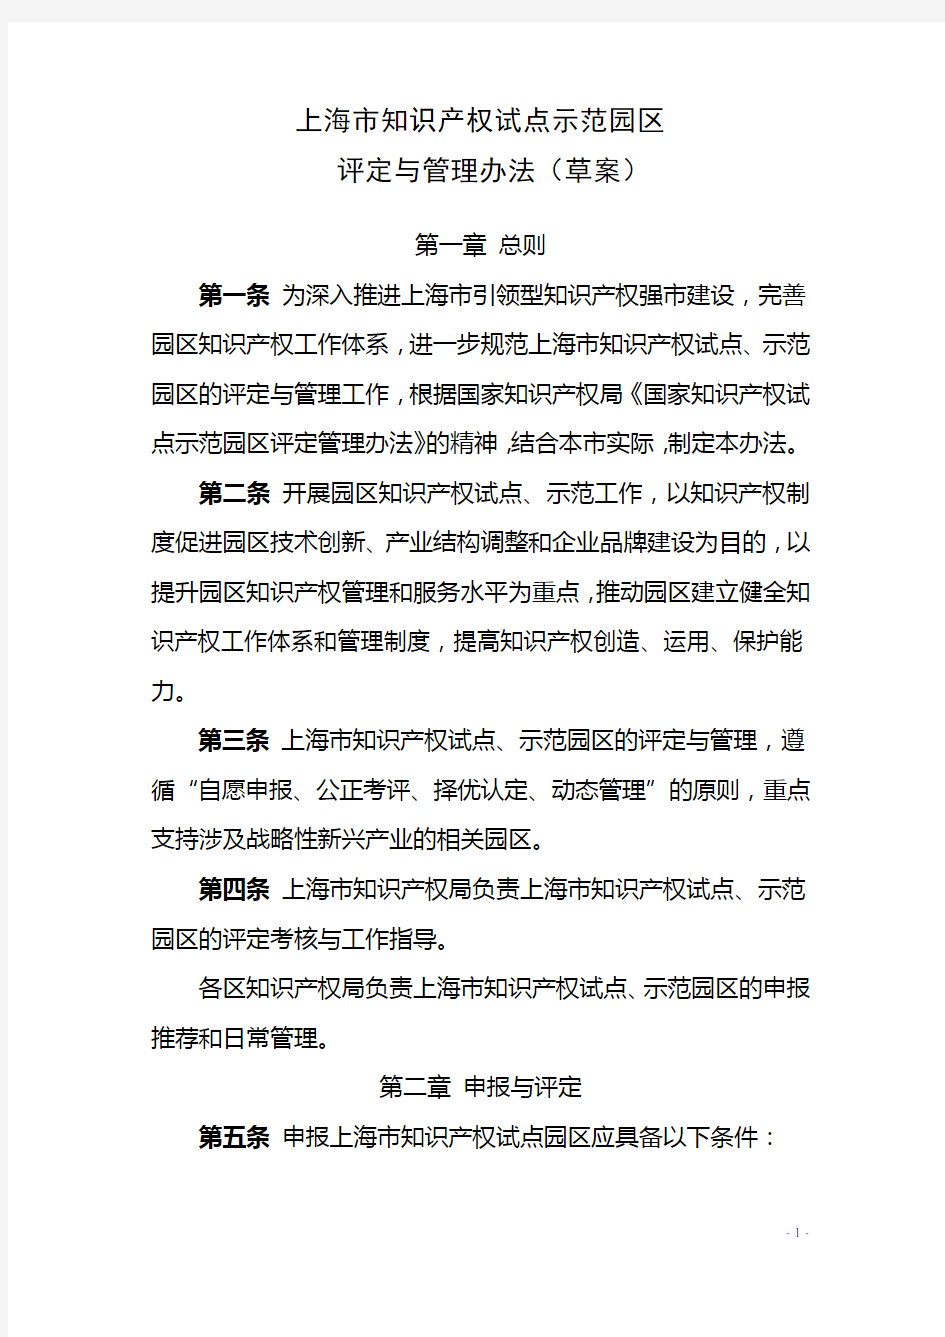 上海市知识产权试点示范园区管理办法